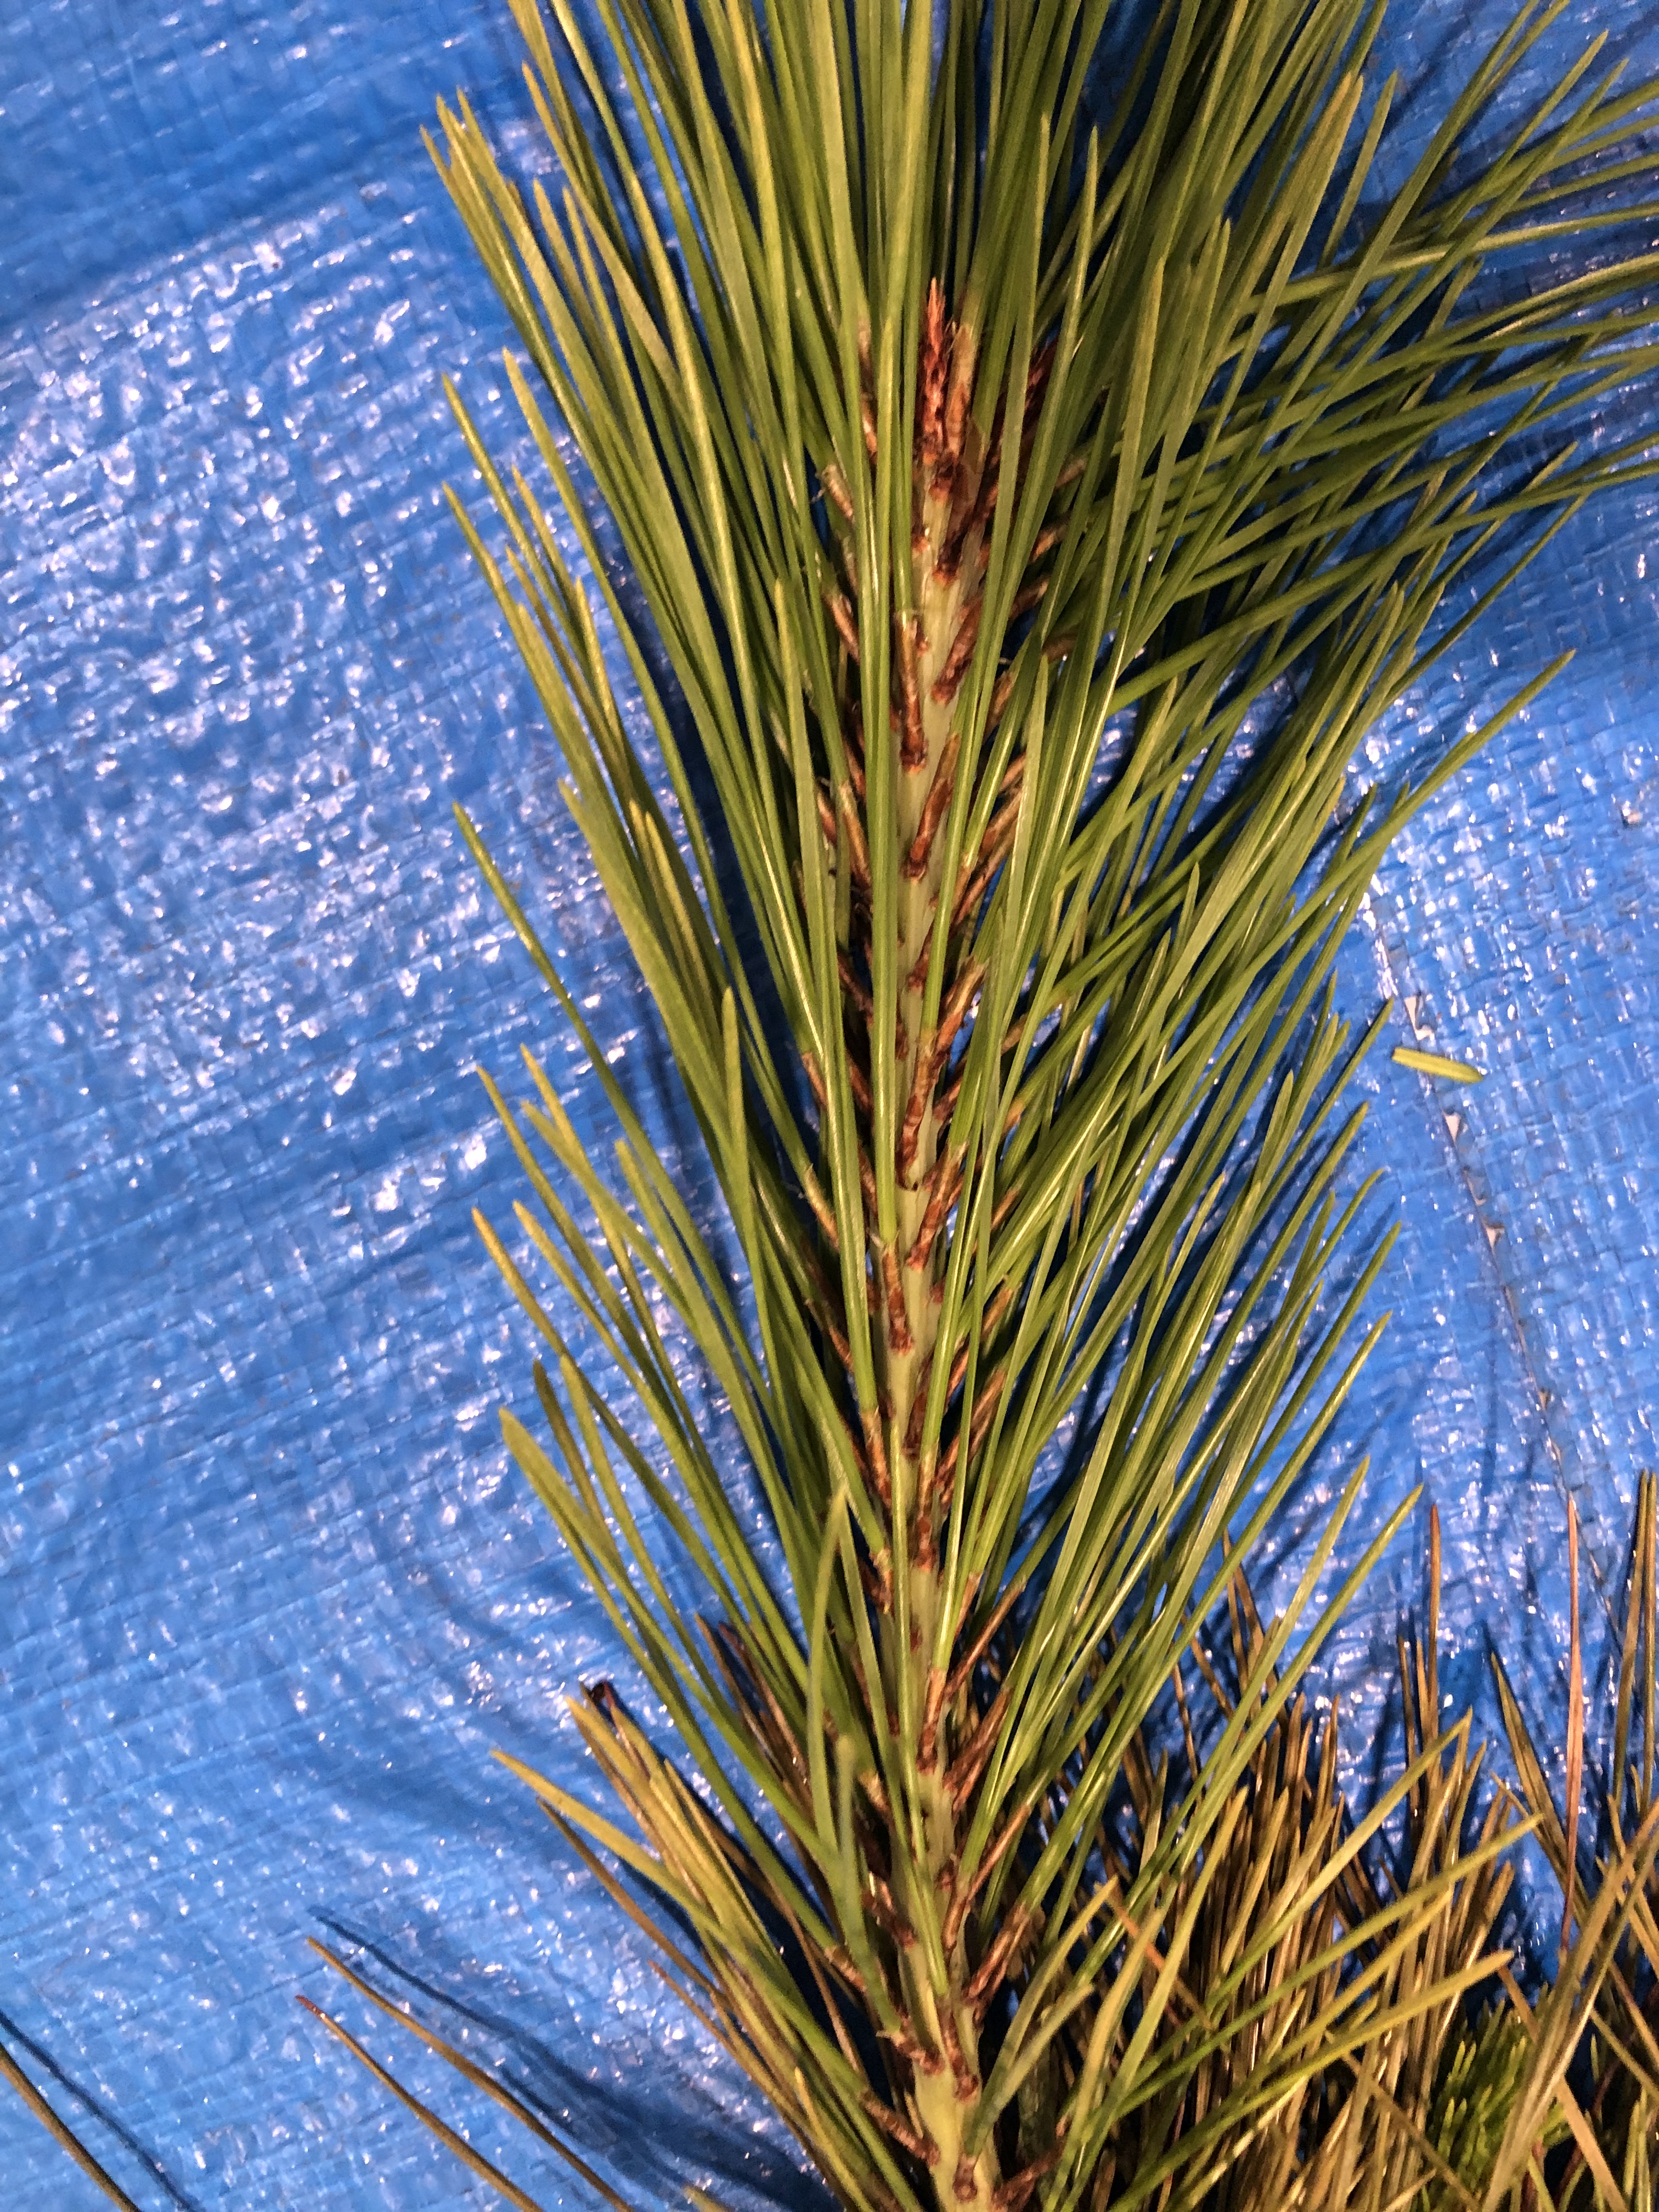 アカマツ - Pinus densiflora 